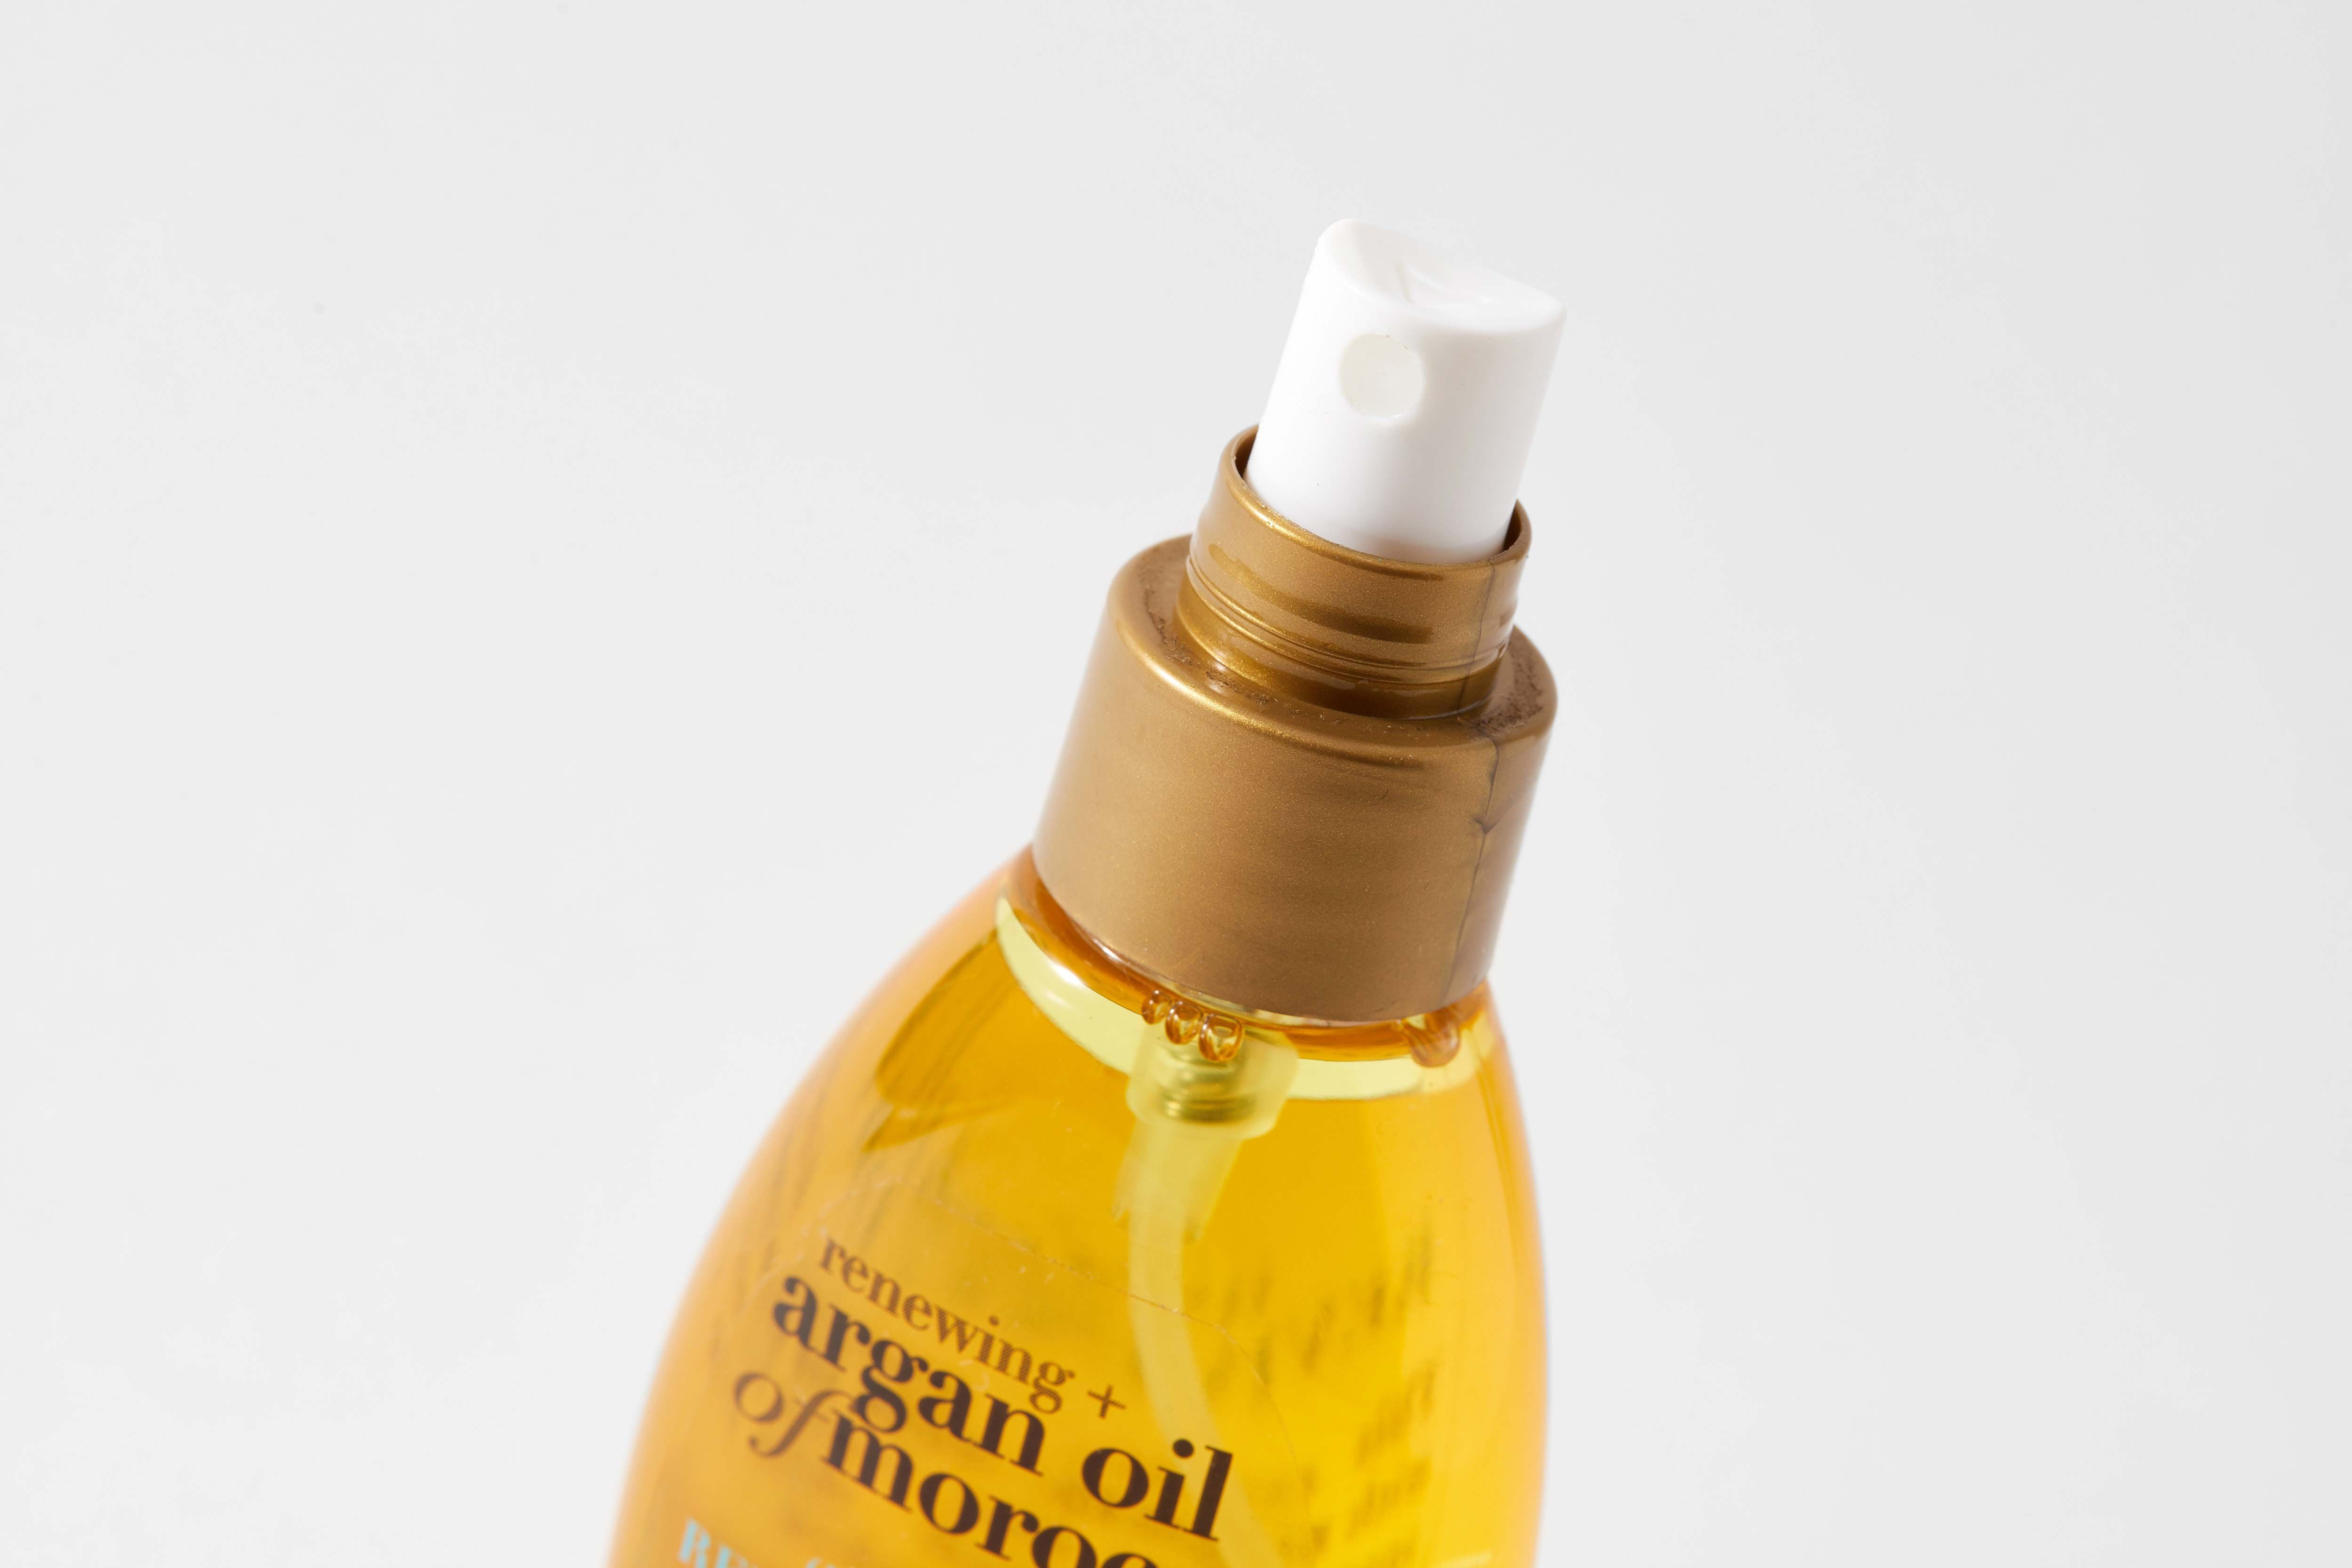 Moroccan argan oil для волос как использовать